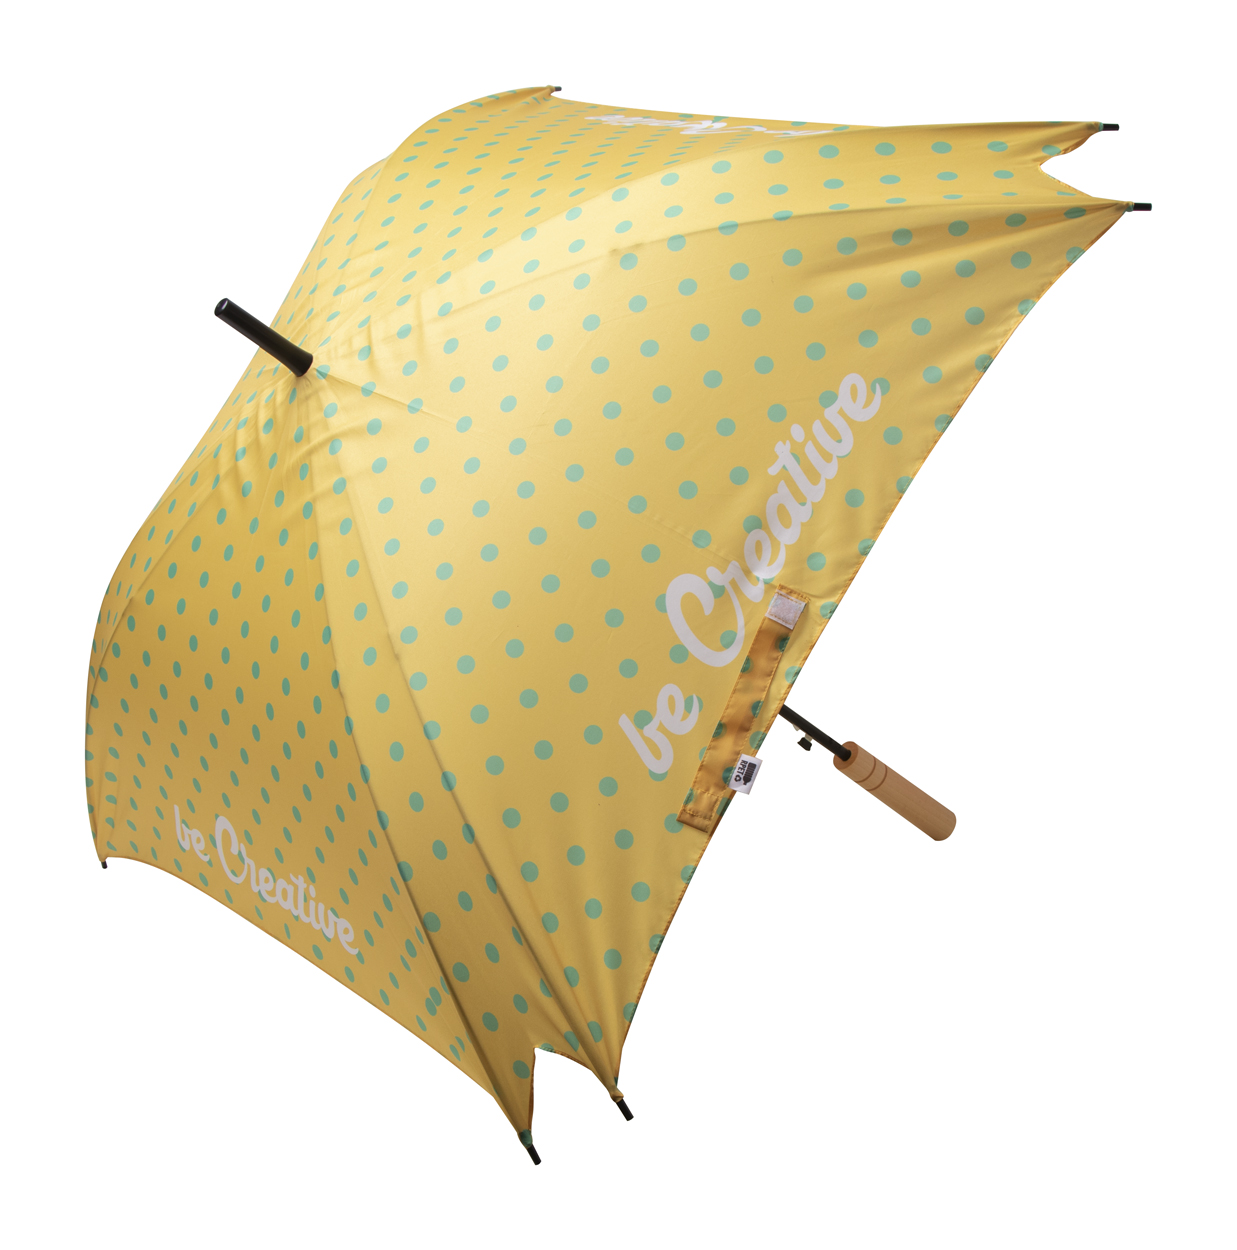 CreaRain Square RPET Custom Umbrella - white